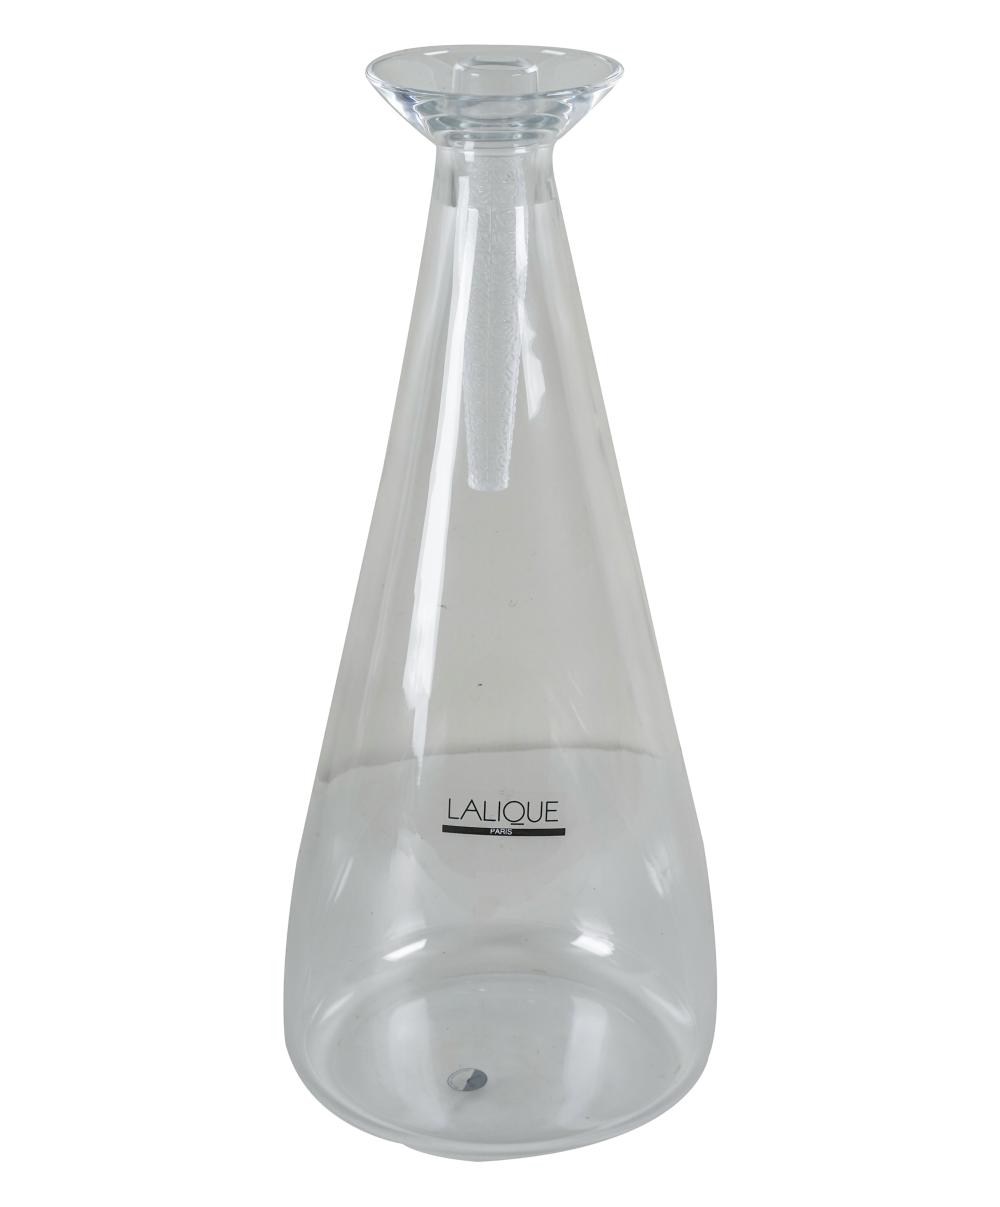 LALIQUE GLASS DECANTERsigned "Lalique